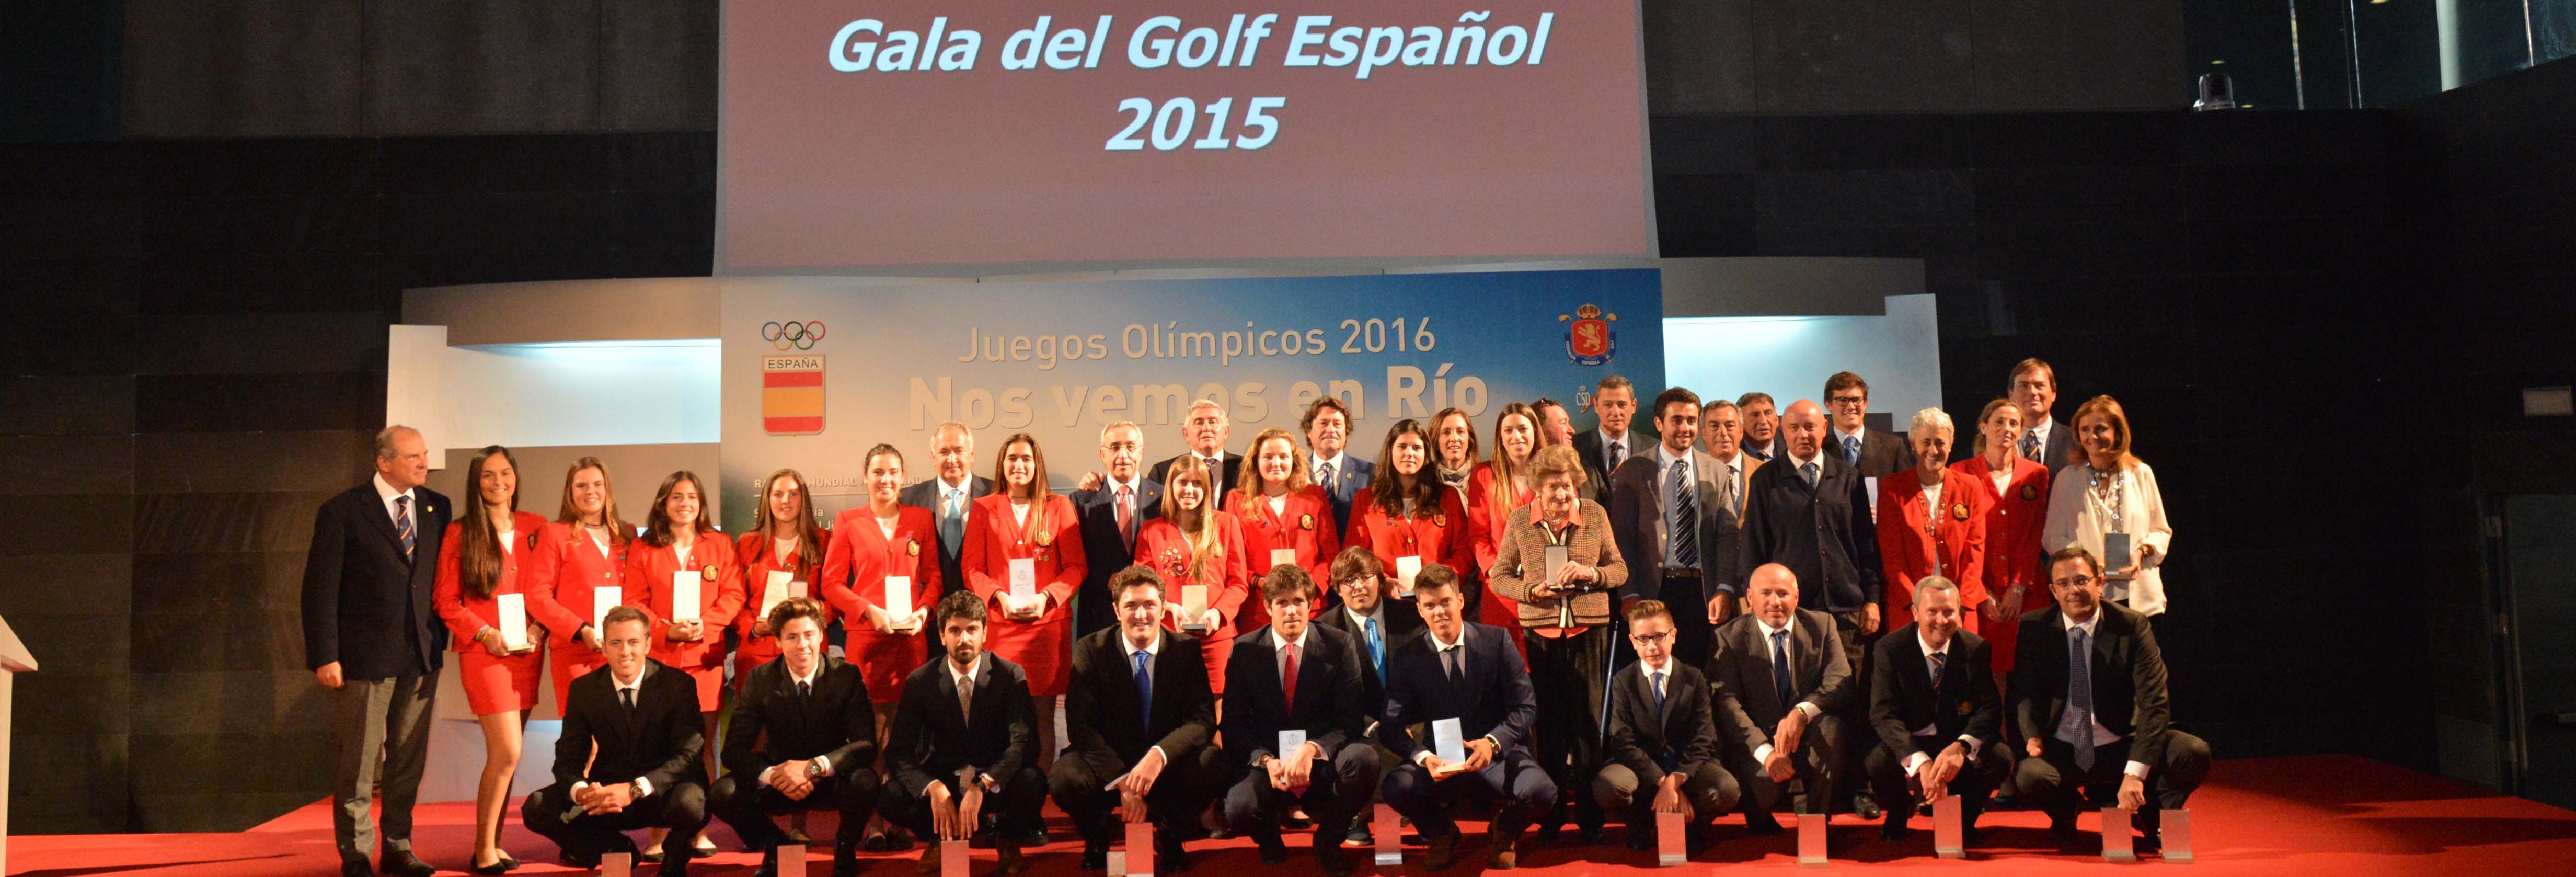 Juegos Olímpicos de Río, referencia de la exitosa Gala del Golf Español 2015